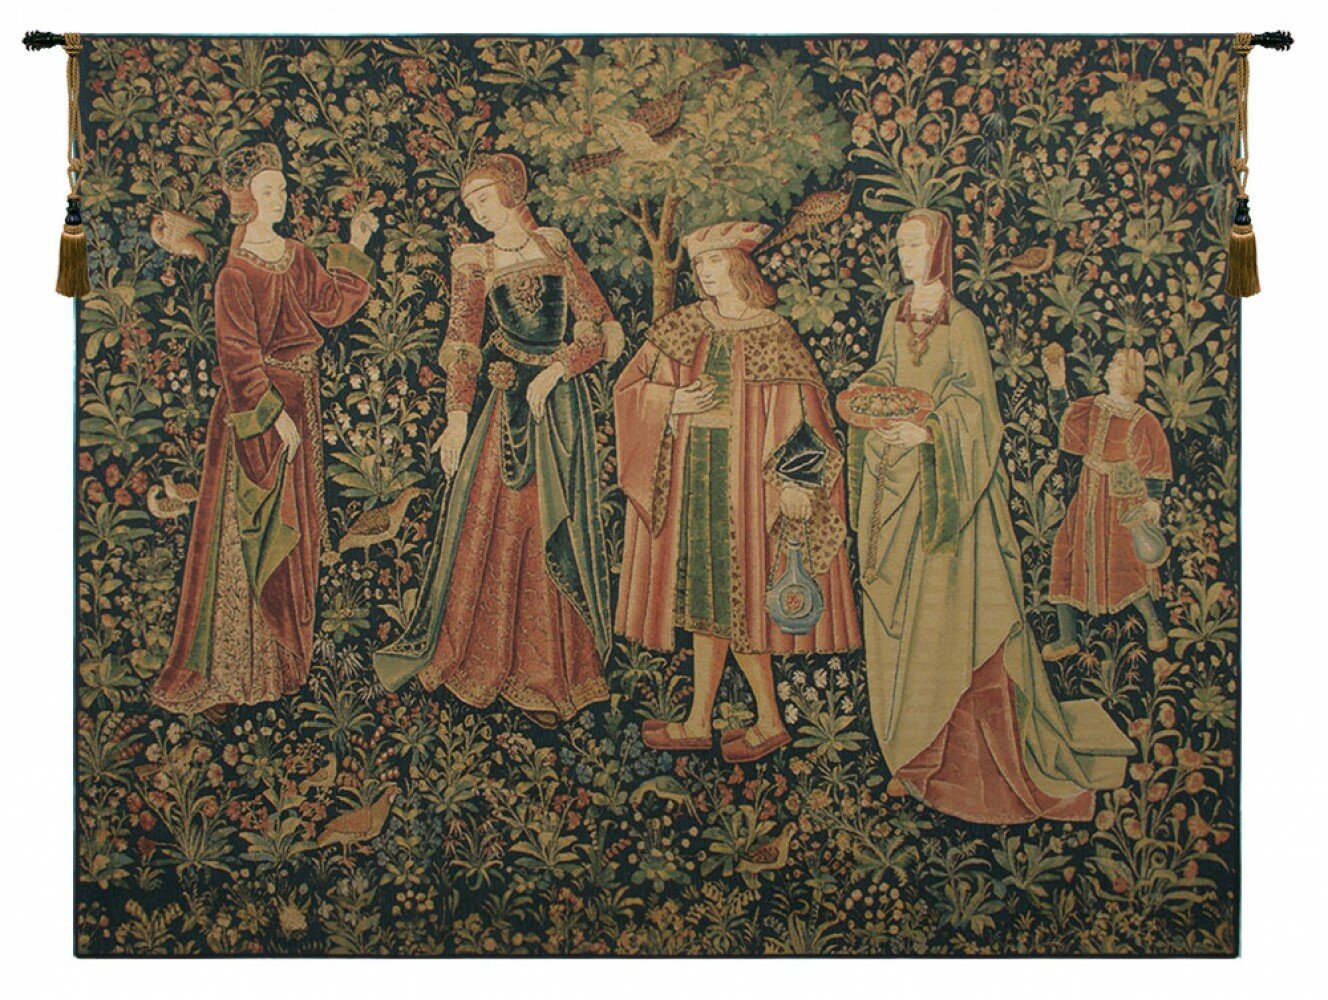 Promenade by Pieter van Aeist Flanders Tapestry